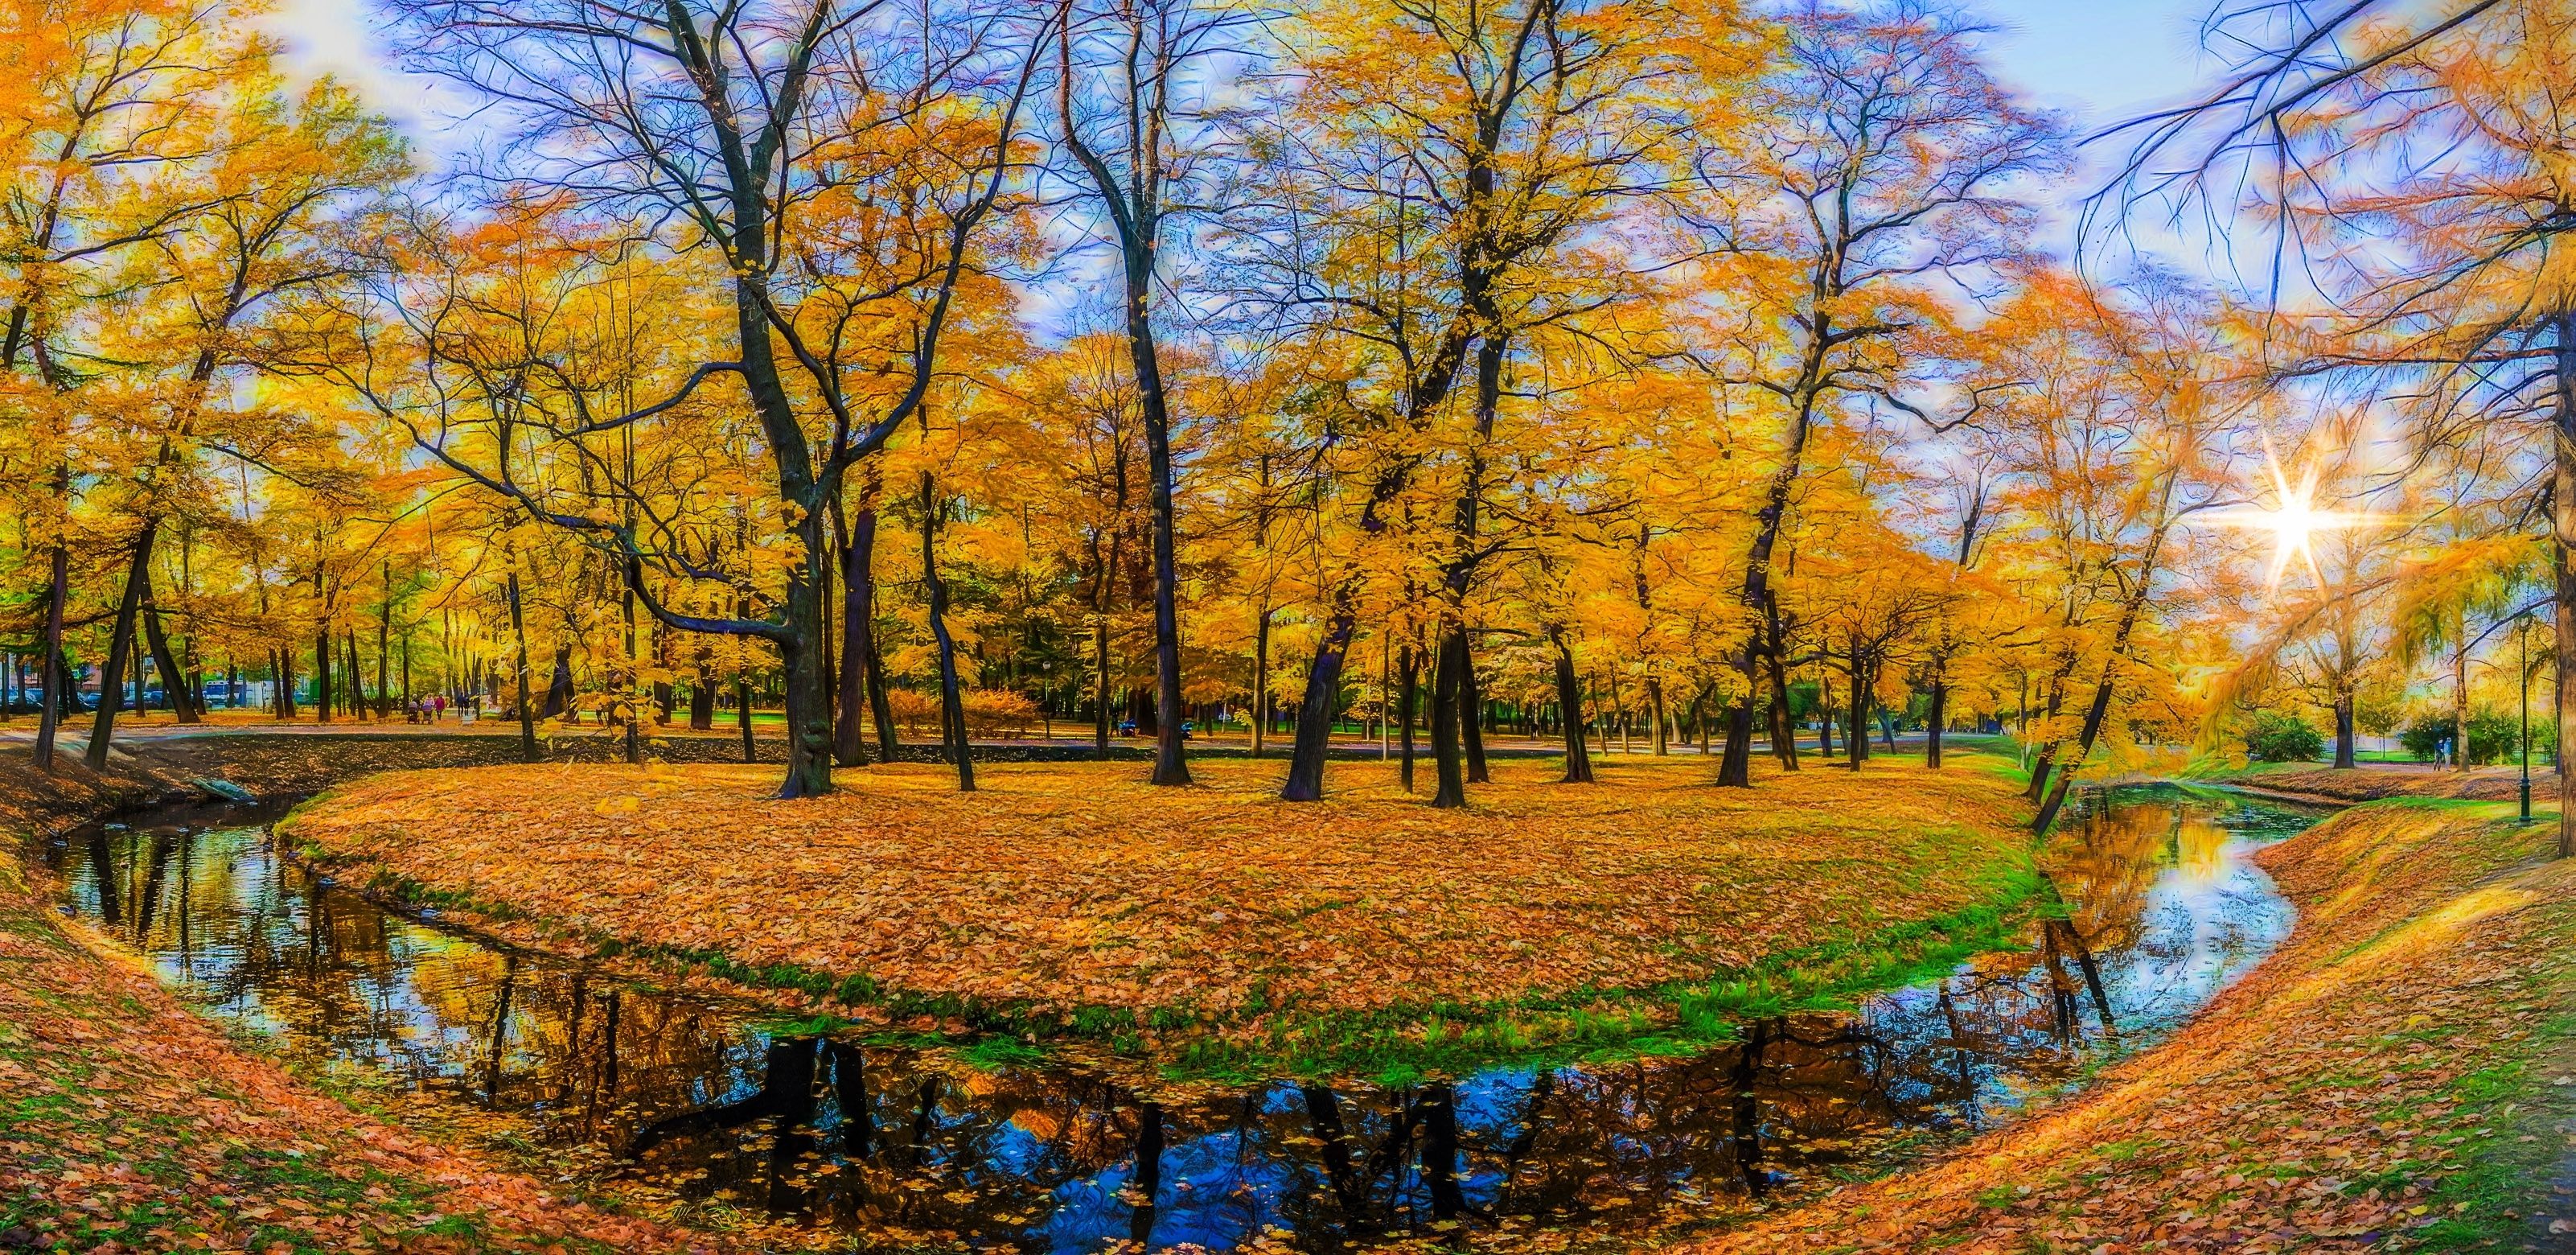 Скачать картинку Осень, Лес, Парк, Дерево, Фотографии в телефон бесплатно.